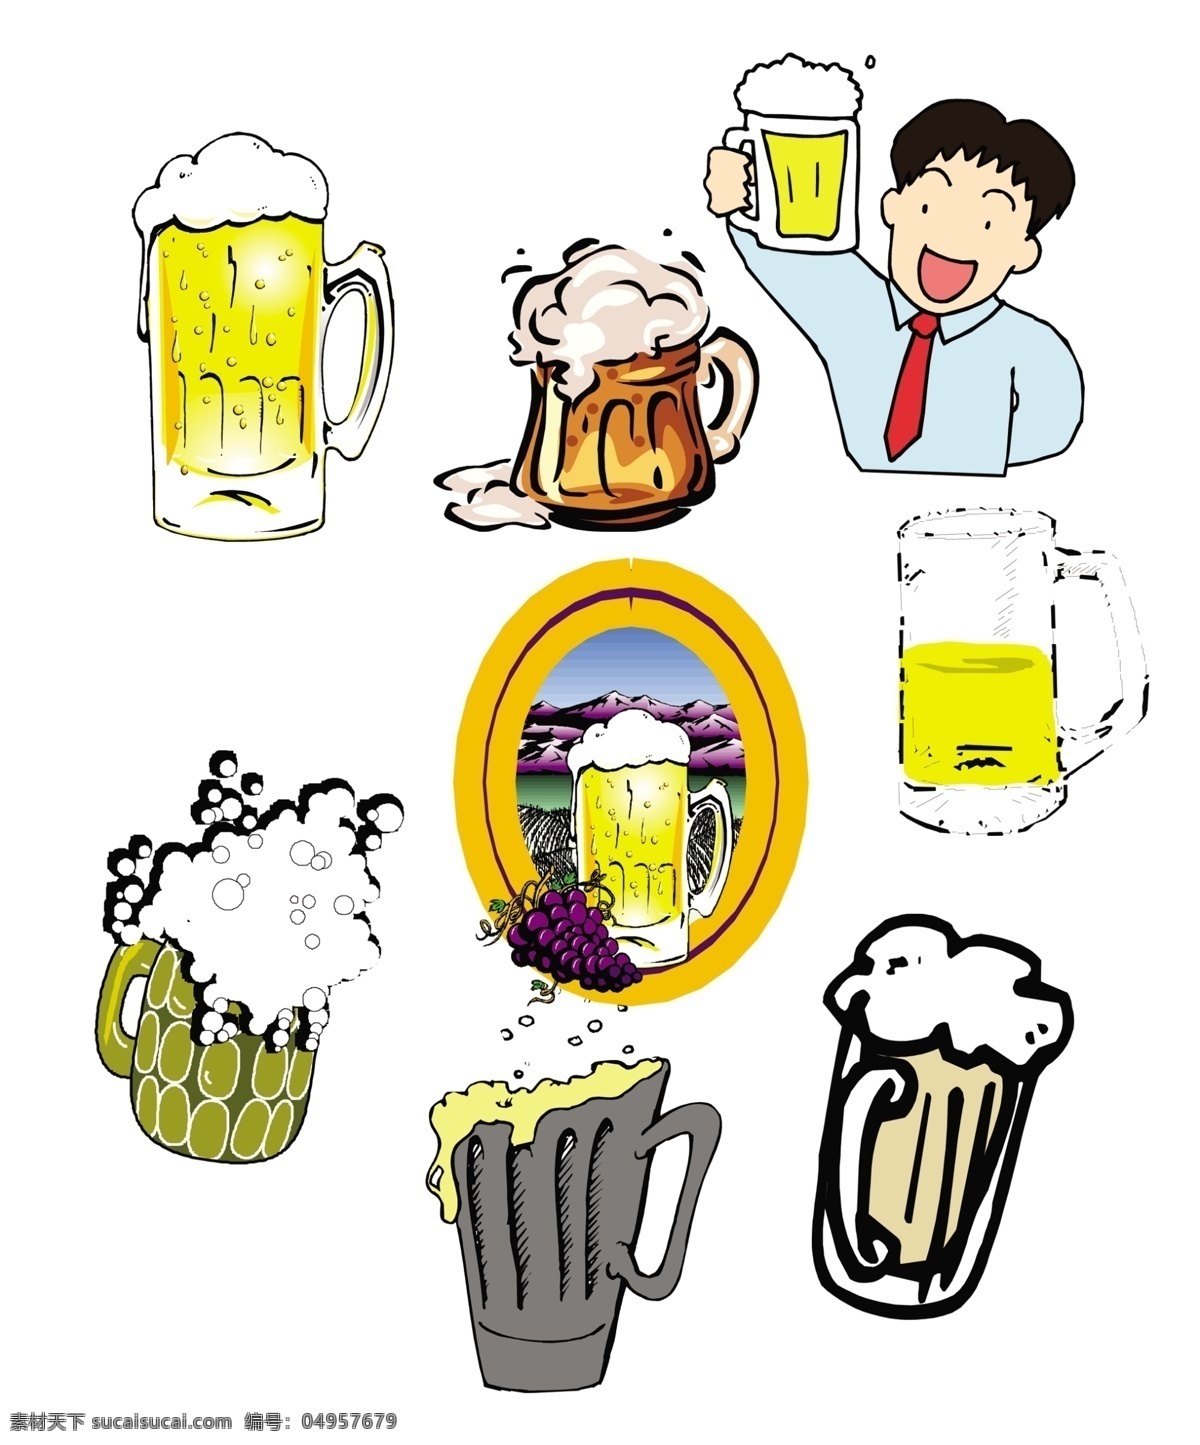 卡通啤酒素材 卡通啤酒 啤酒沫 干杯 举杯 卡通啤酒杯 设计素材 酒桶 喝啤酒 红酒 易拉罐 啤酒 酒杯 玻璃杯 啤酒杯 气泡 分层 源文件